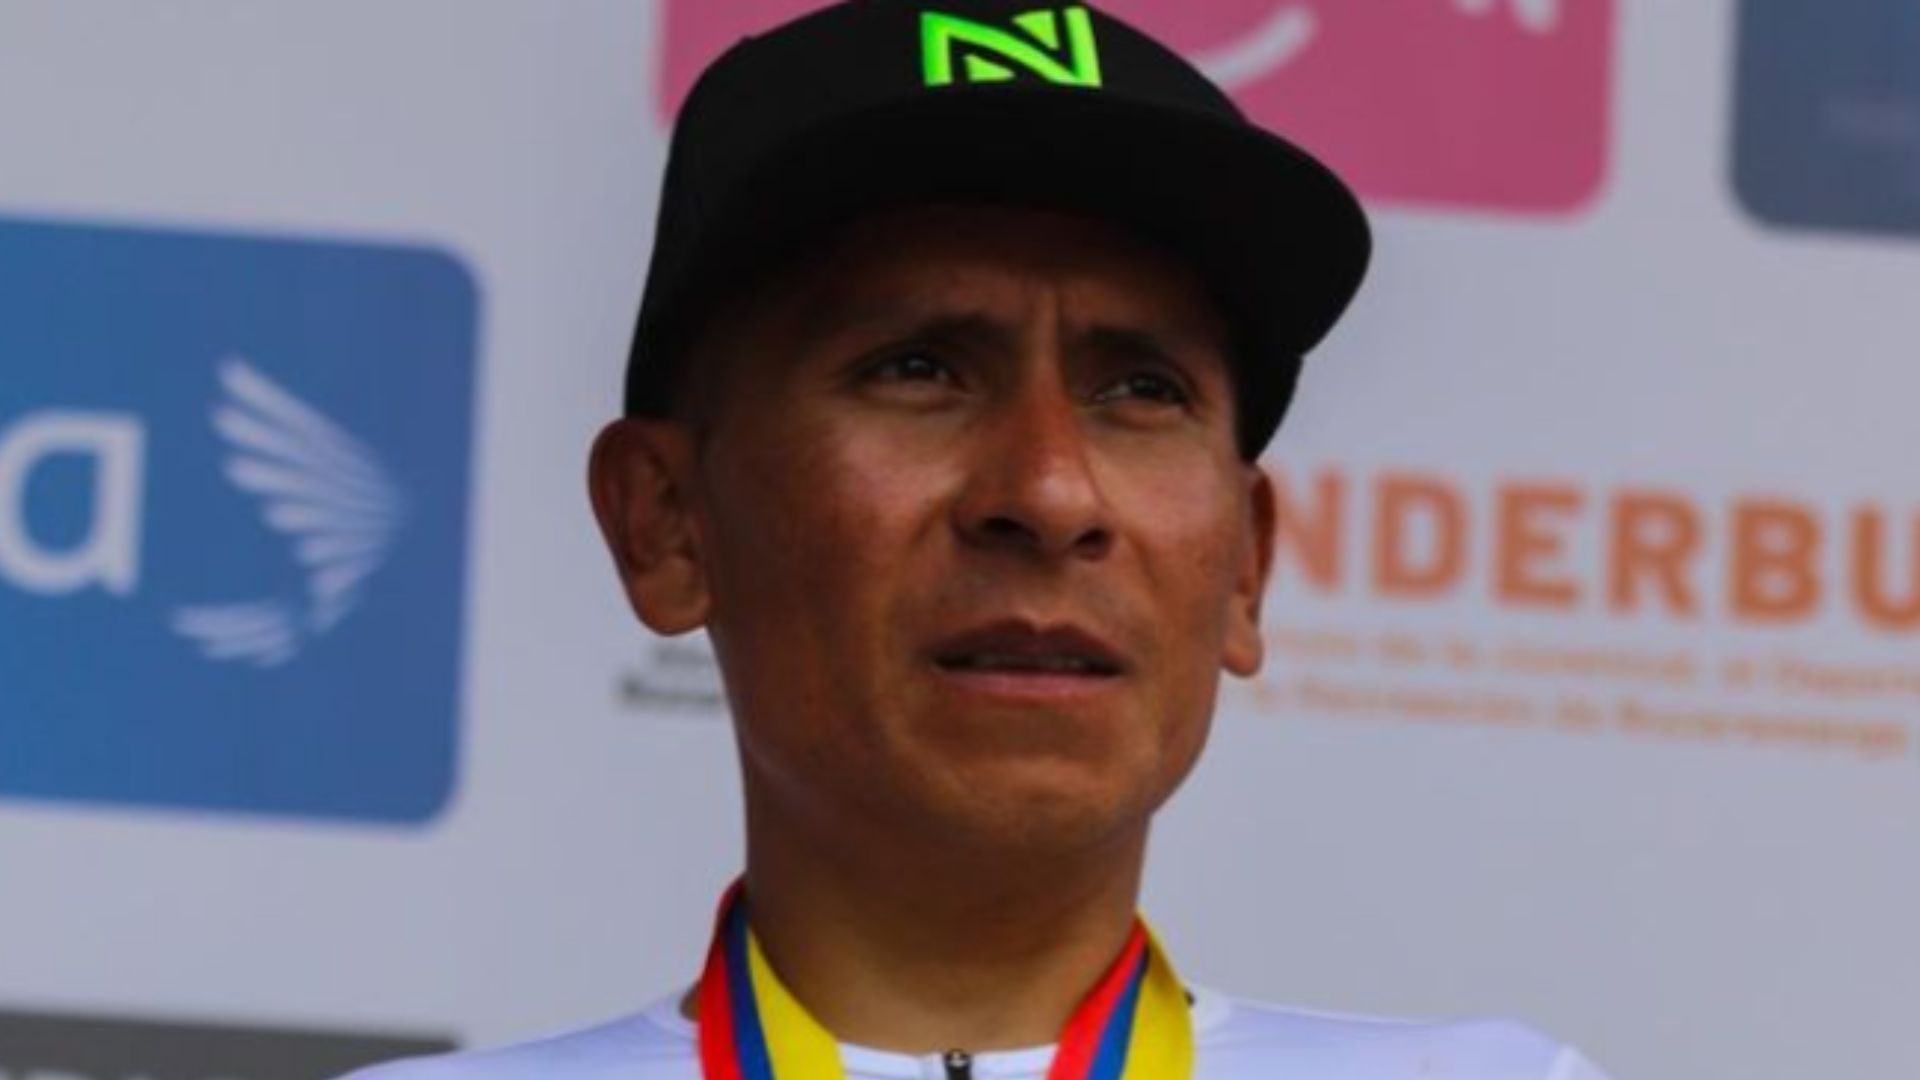 “No le he robado a nadie, no he hecho trampa”: Nairo Quintana sigue buscando equipo tras la sanción de la UCI